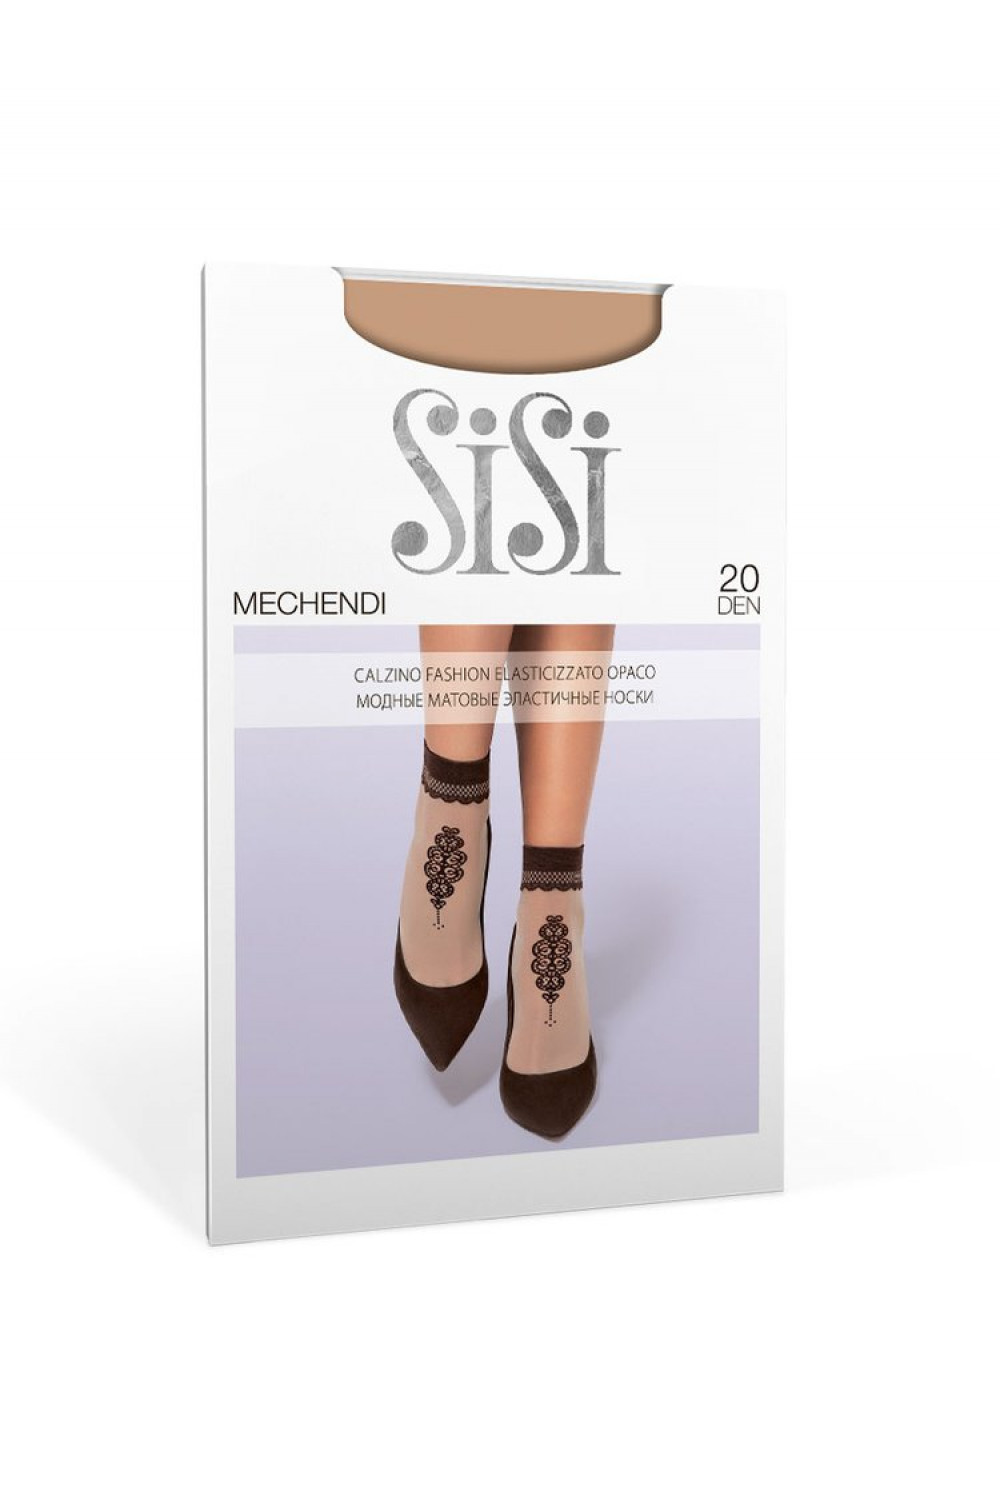 SISI calz. MECHENDI 20 носки (с принт. орнаментом)